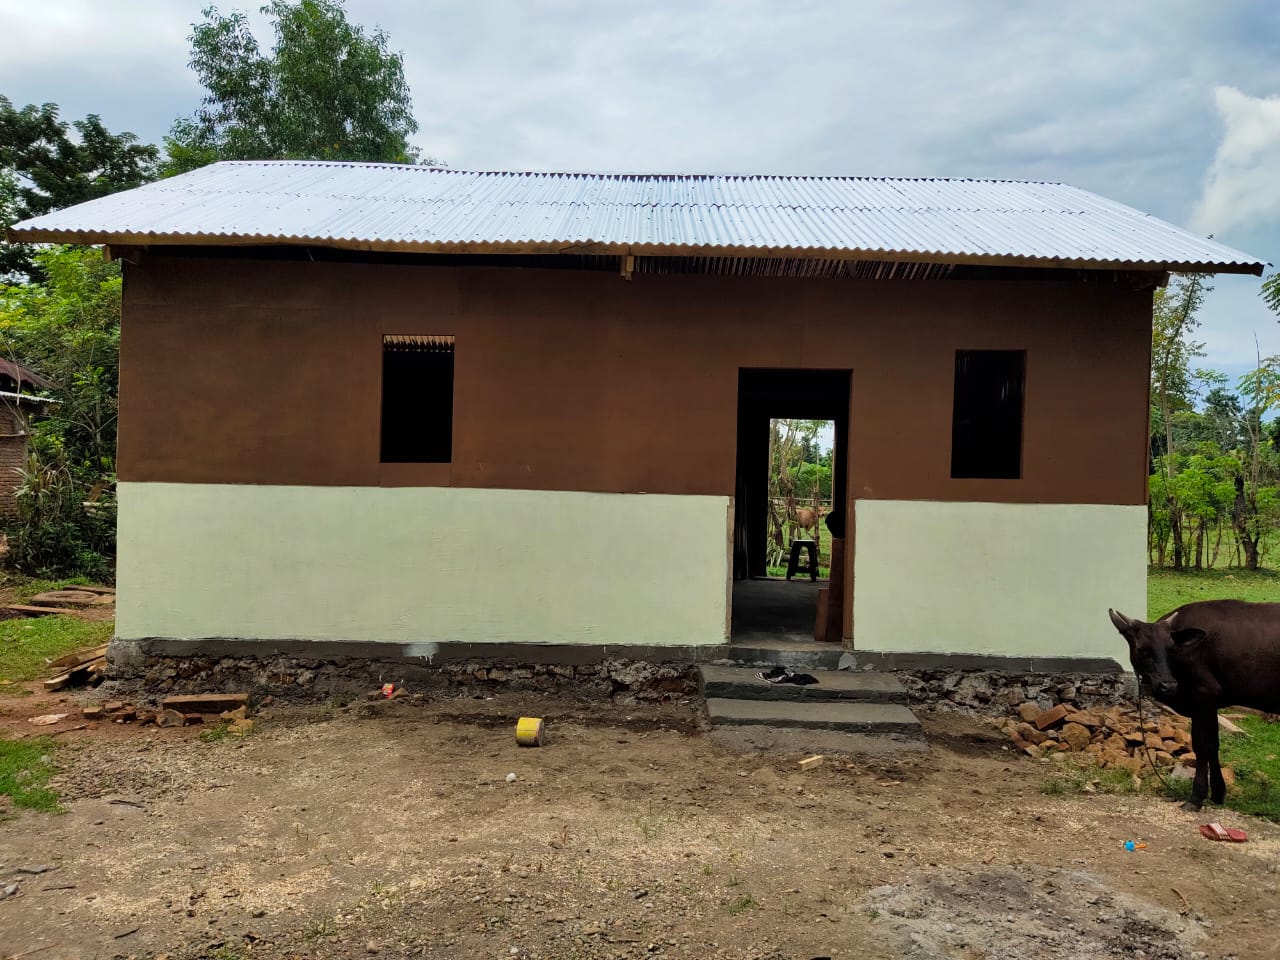 Rumah layak huni Desa Kampung Beru, Kec. Polongbangkeng Utara - Progress Penyaluran Dana Desa Kab. Takalar dan Kab. Gowa tahun 2021 melalui KPPN Makassar II 